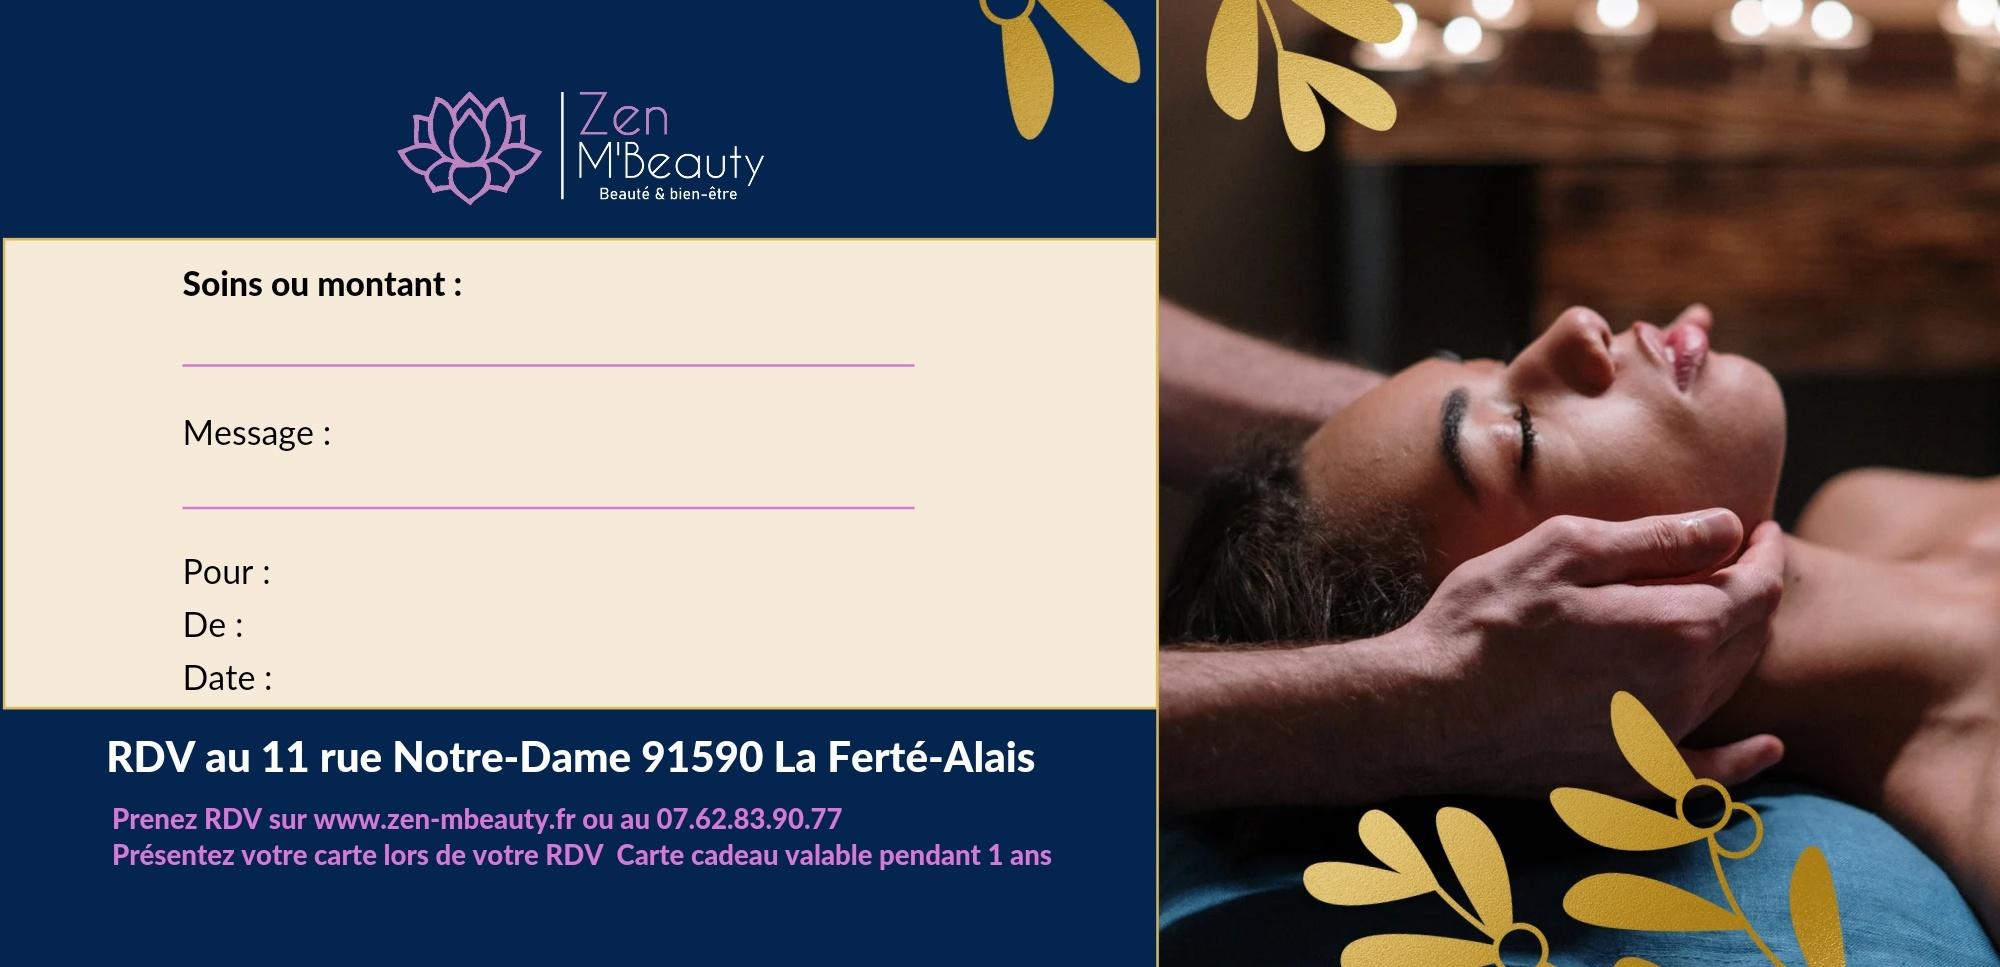 Zen M'beauty Maryam Esthéticienne (épilations, Massage...) à La Ferté Alais En Essonne La Ferté Alais